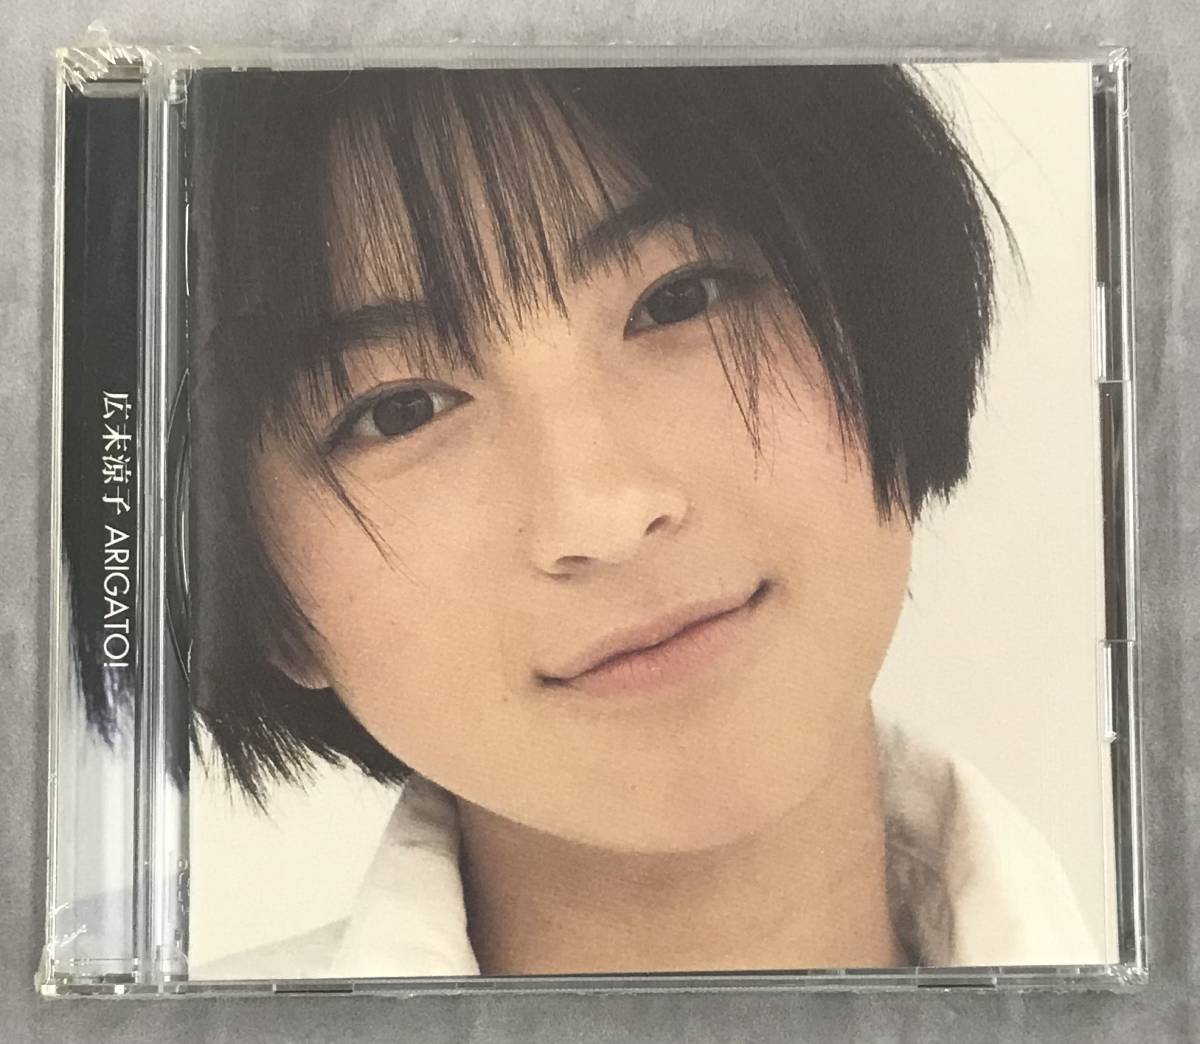  новый товар нераспечатанный CD* Hirosue Ryouko ARIGATO!.,(1997/11/19)/ WPCV7413..